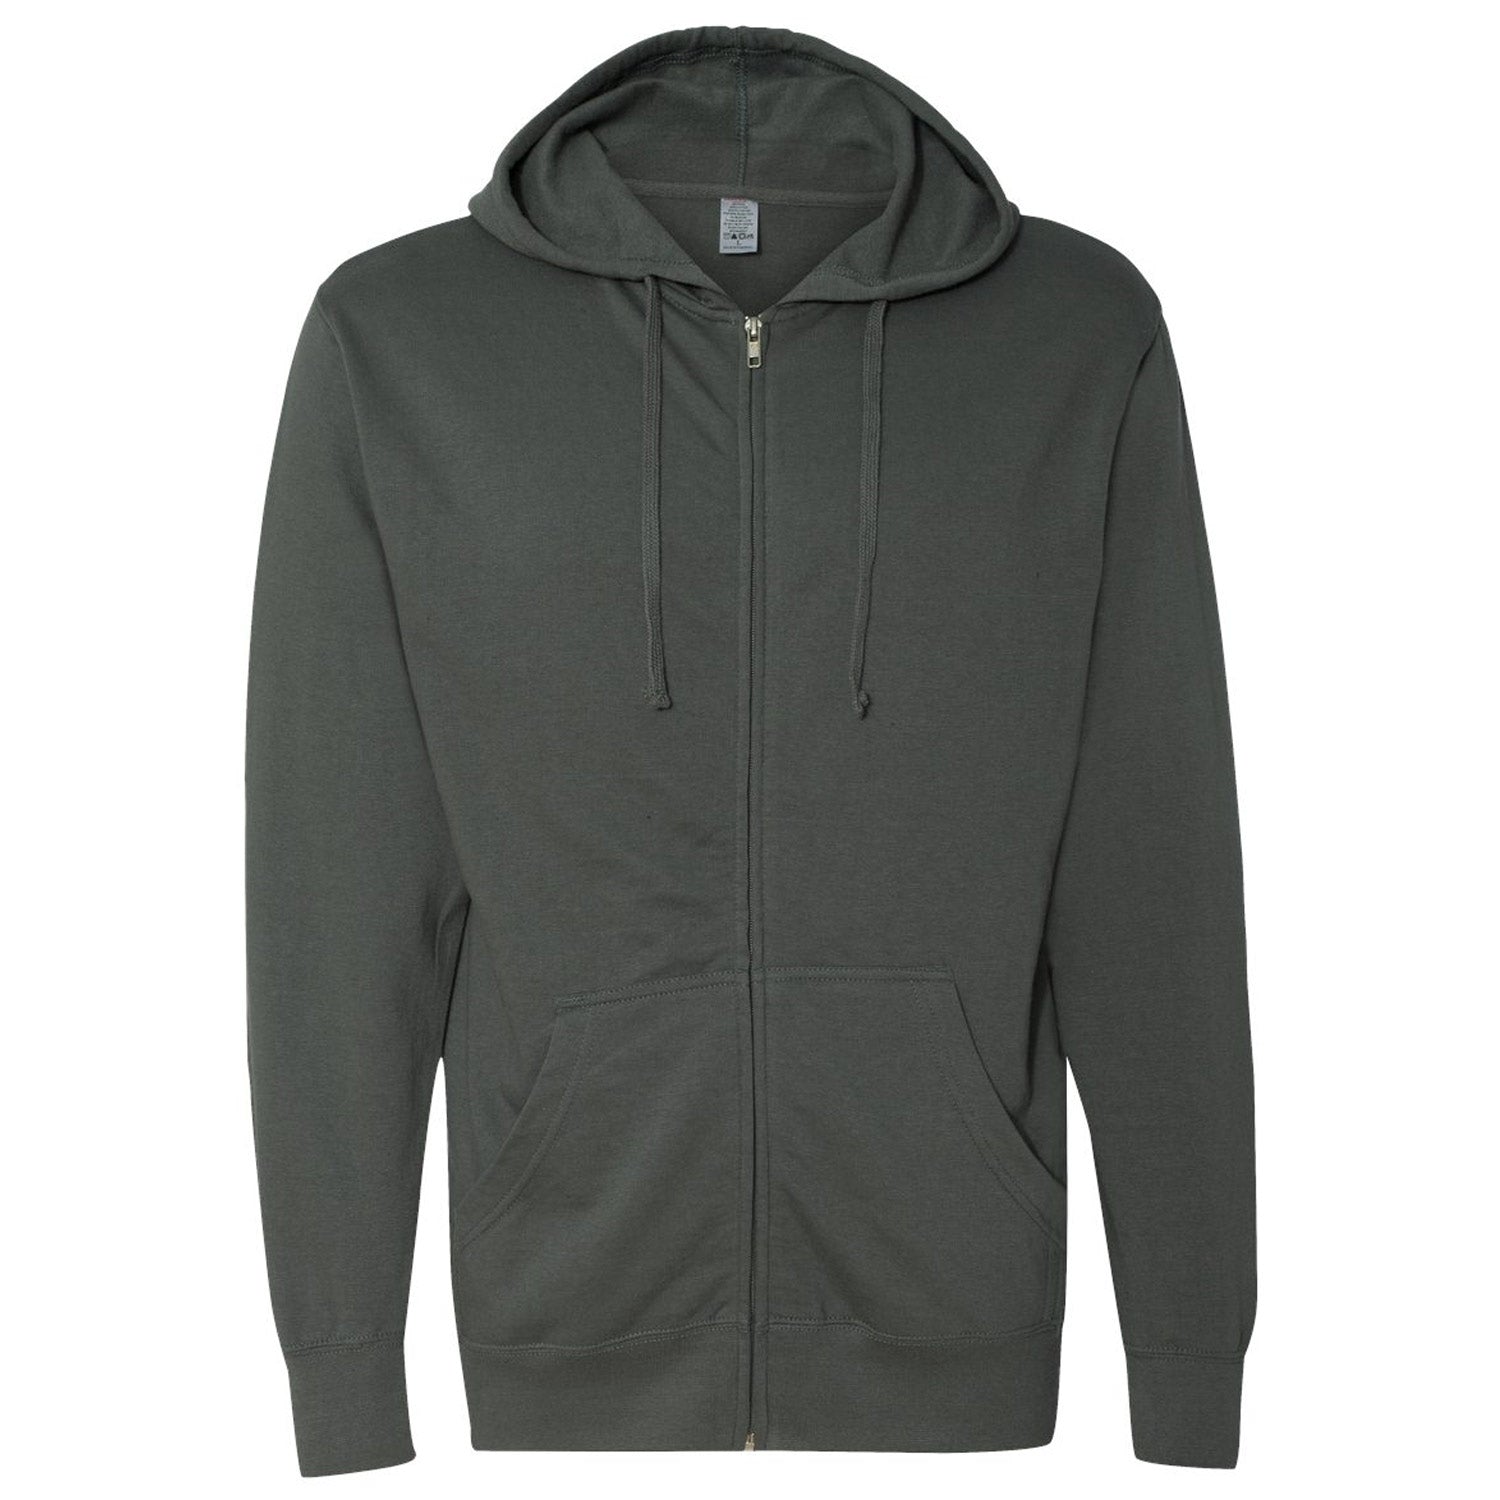 S&S Lightweight Full-Zip Hooded Sweatshirt- Black Heather